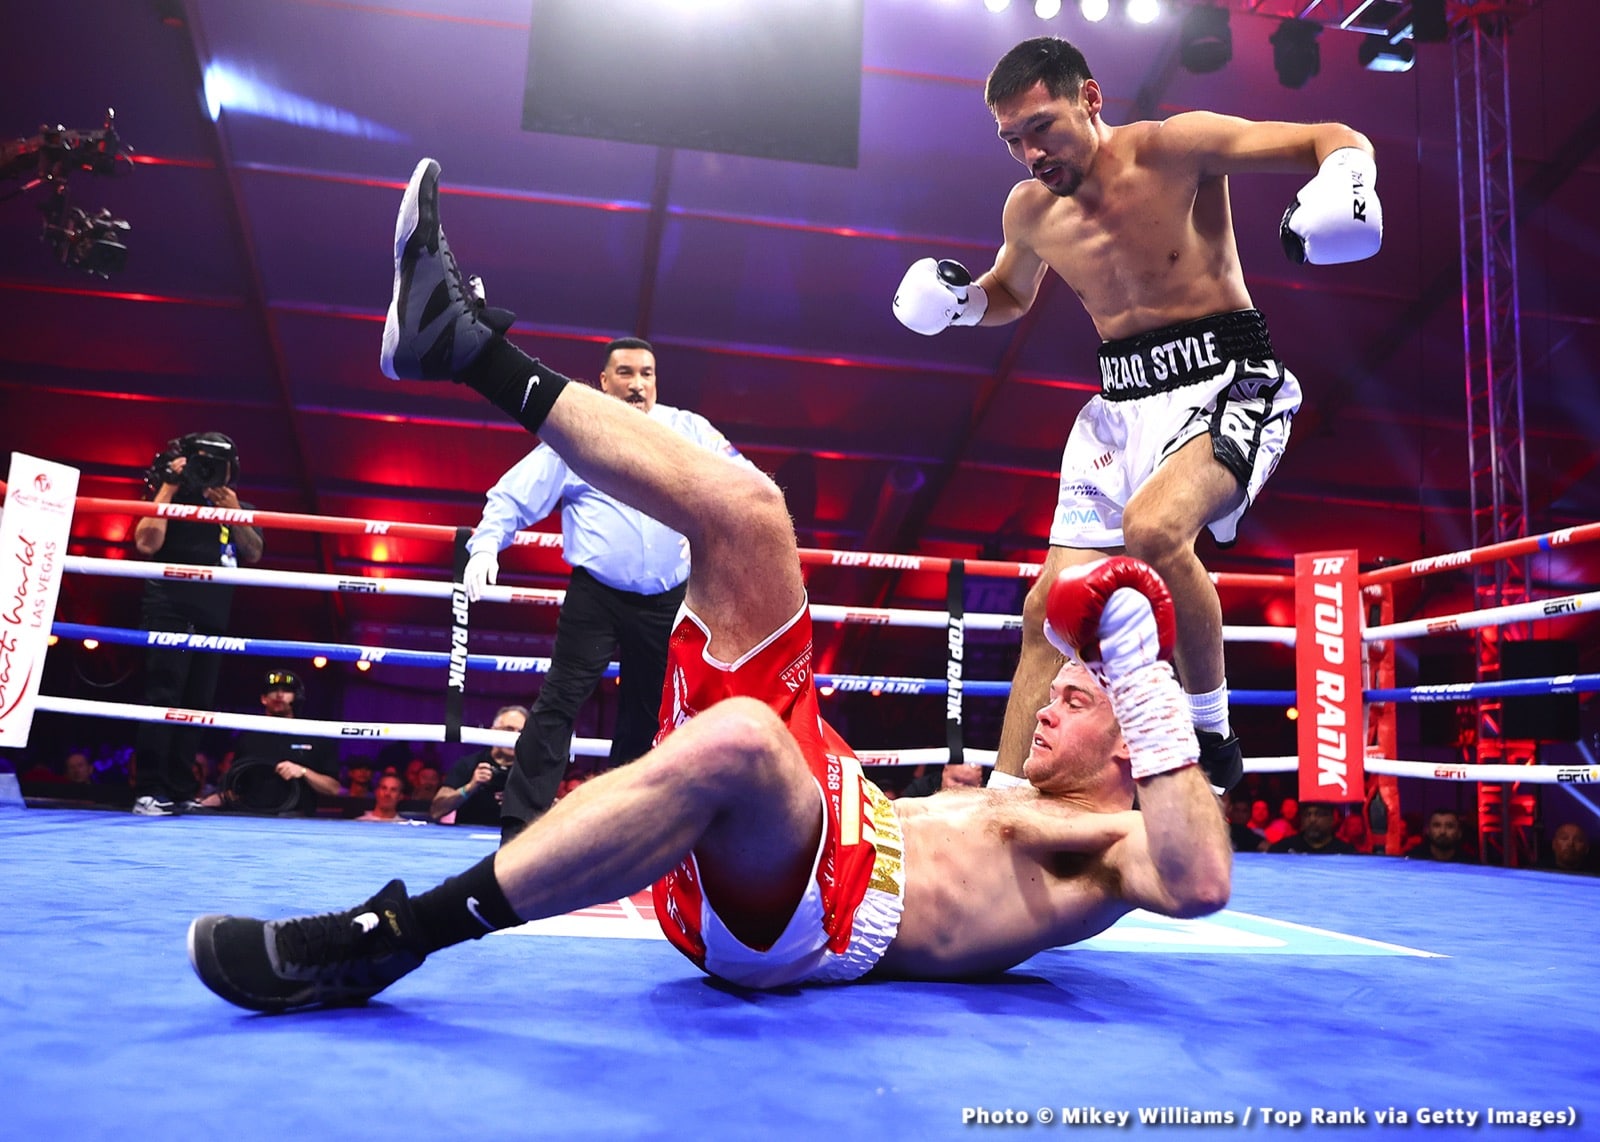 Janibek Alimkhanuly boxing image / photo